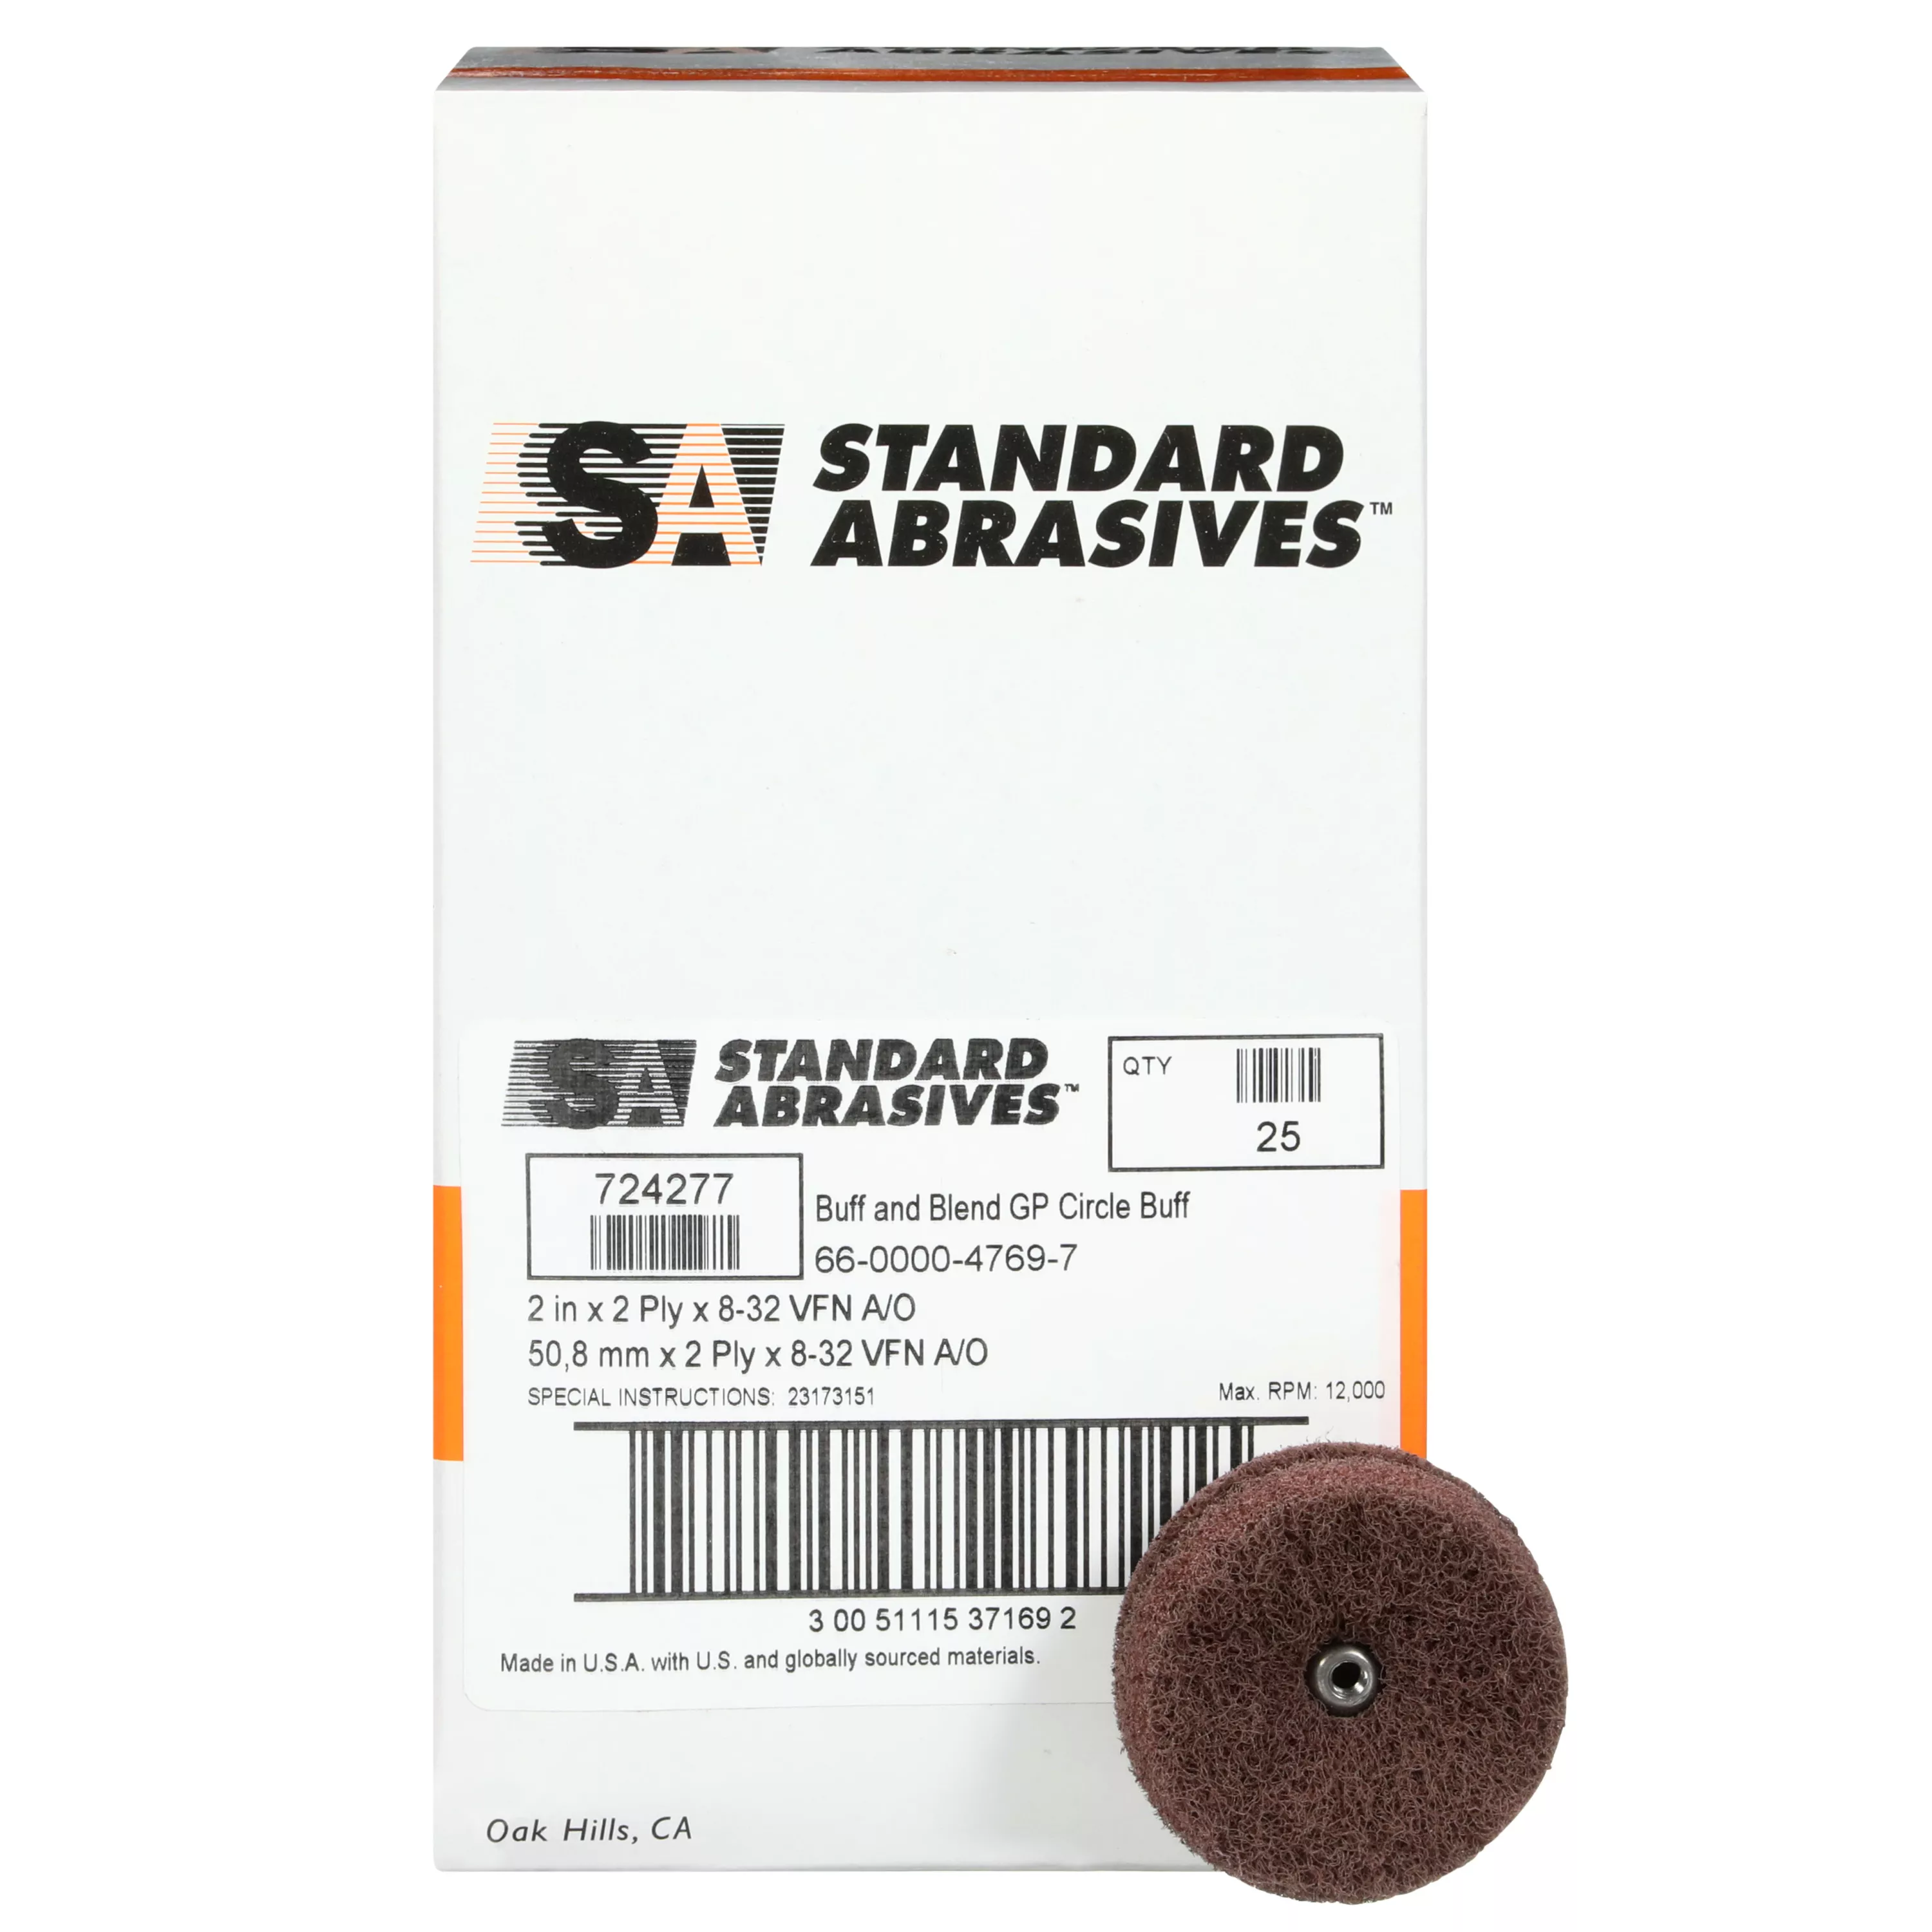 UPC 00051115371691 | Standard Abrasives™ Buff and Blend Circle Buff GP 724277